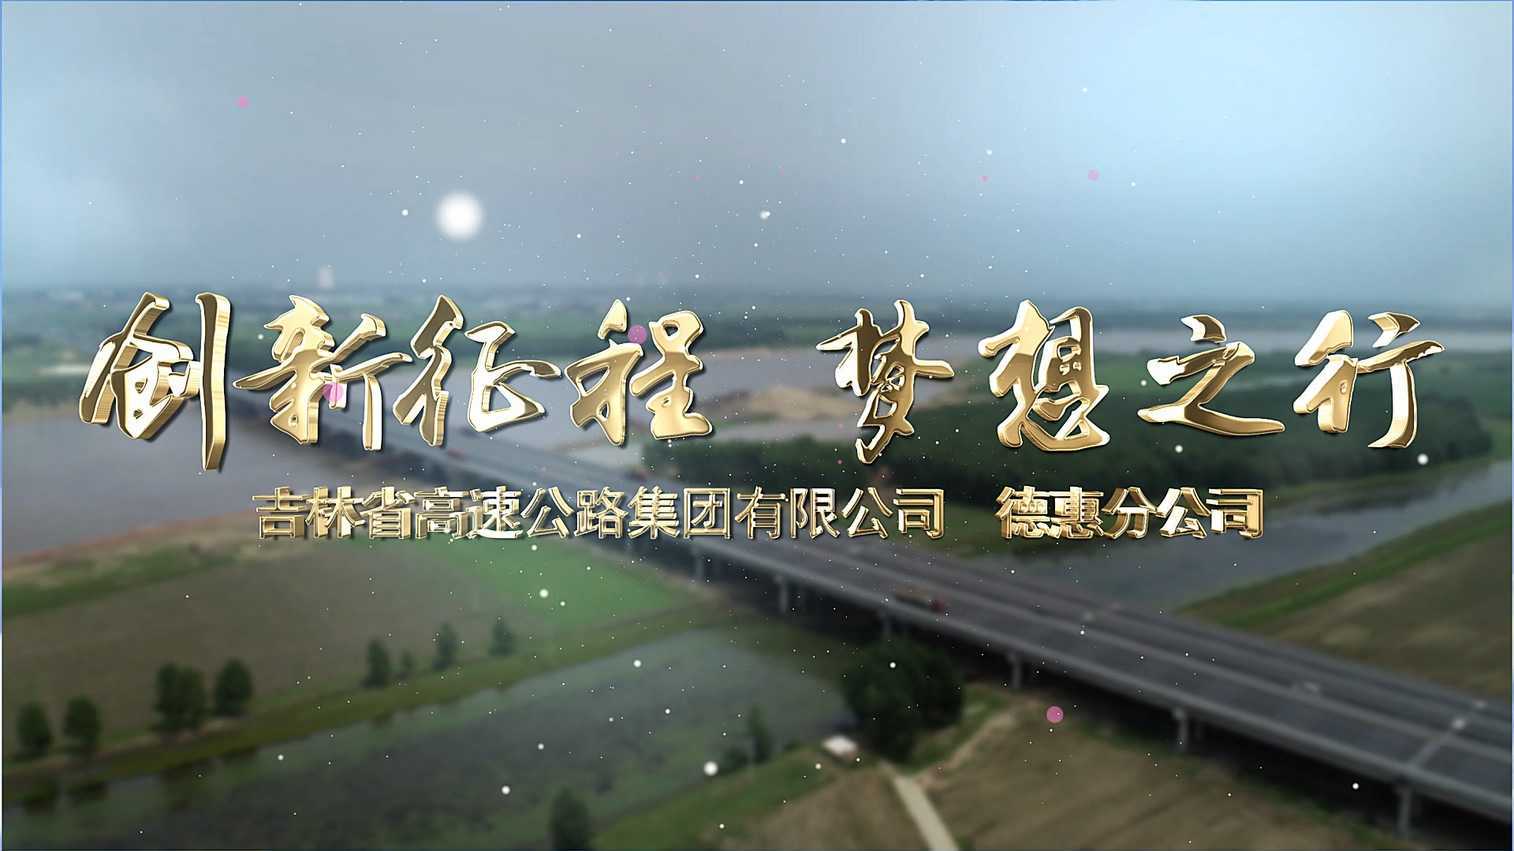 创新征程 梦想之行 吉林省高速公路集团有限公司 德惠分公司